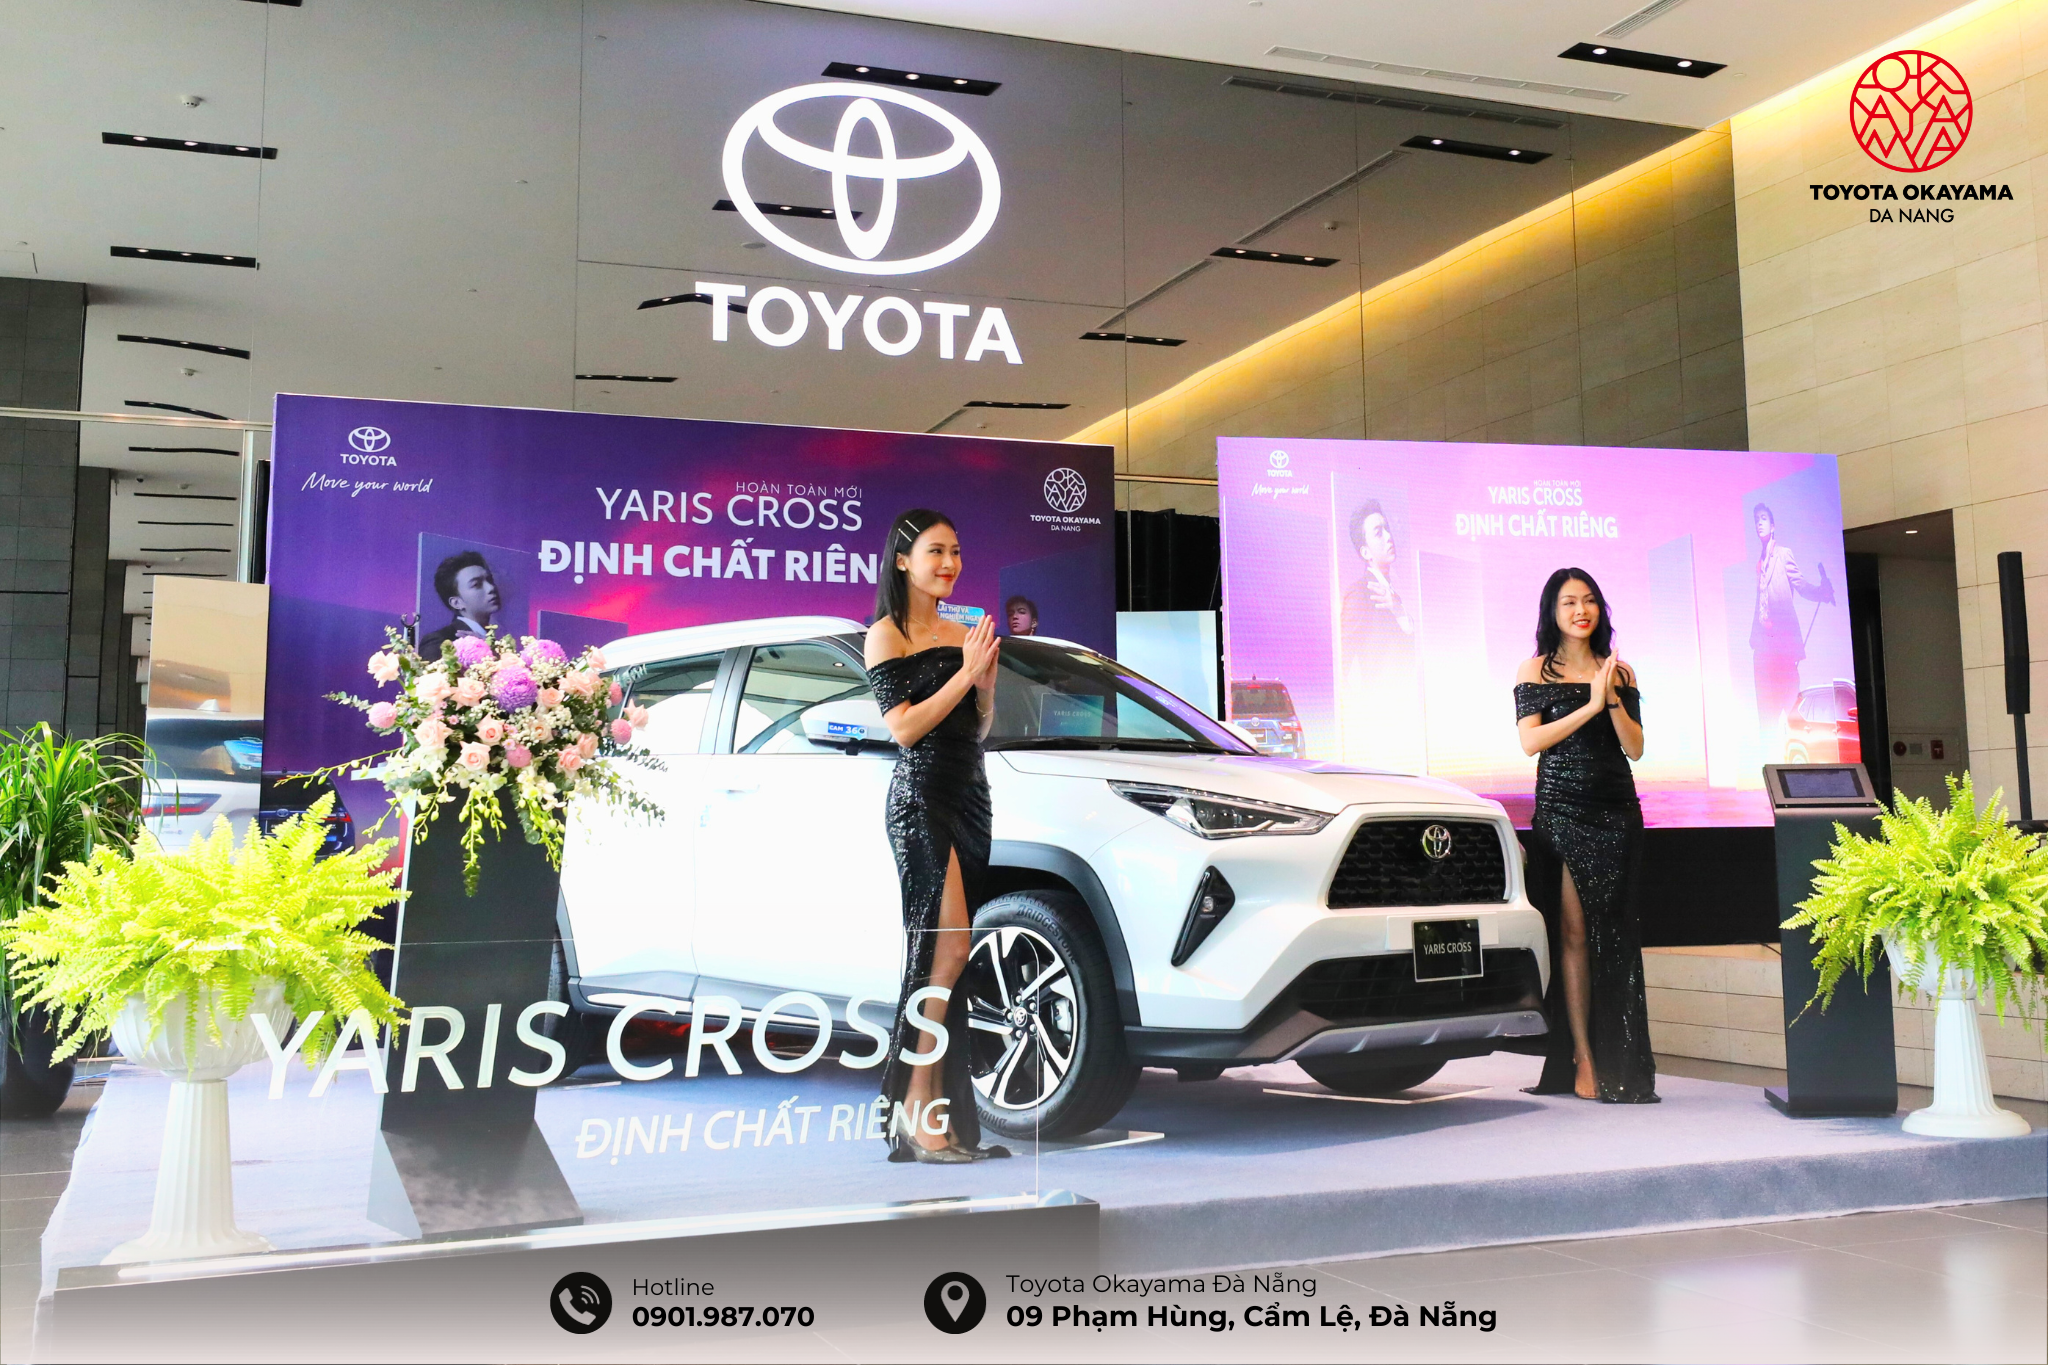 Xe Toyota Yaris Cross Ohoàn toàn mới được ra mắt tại Toyota okayama